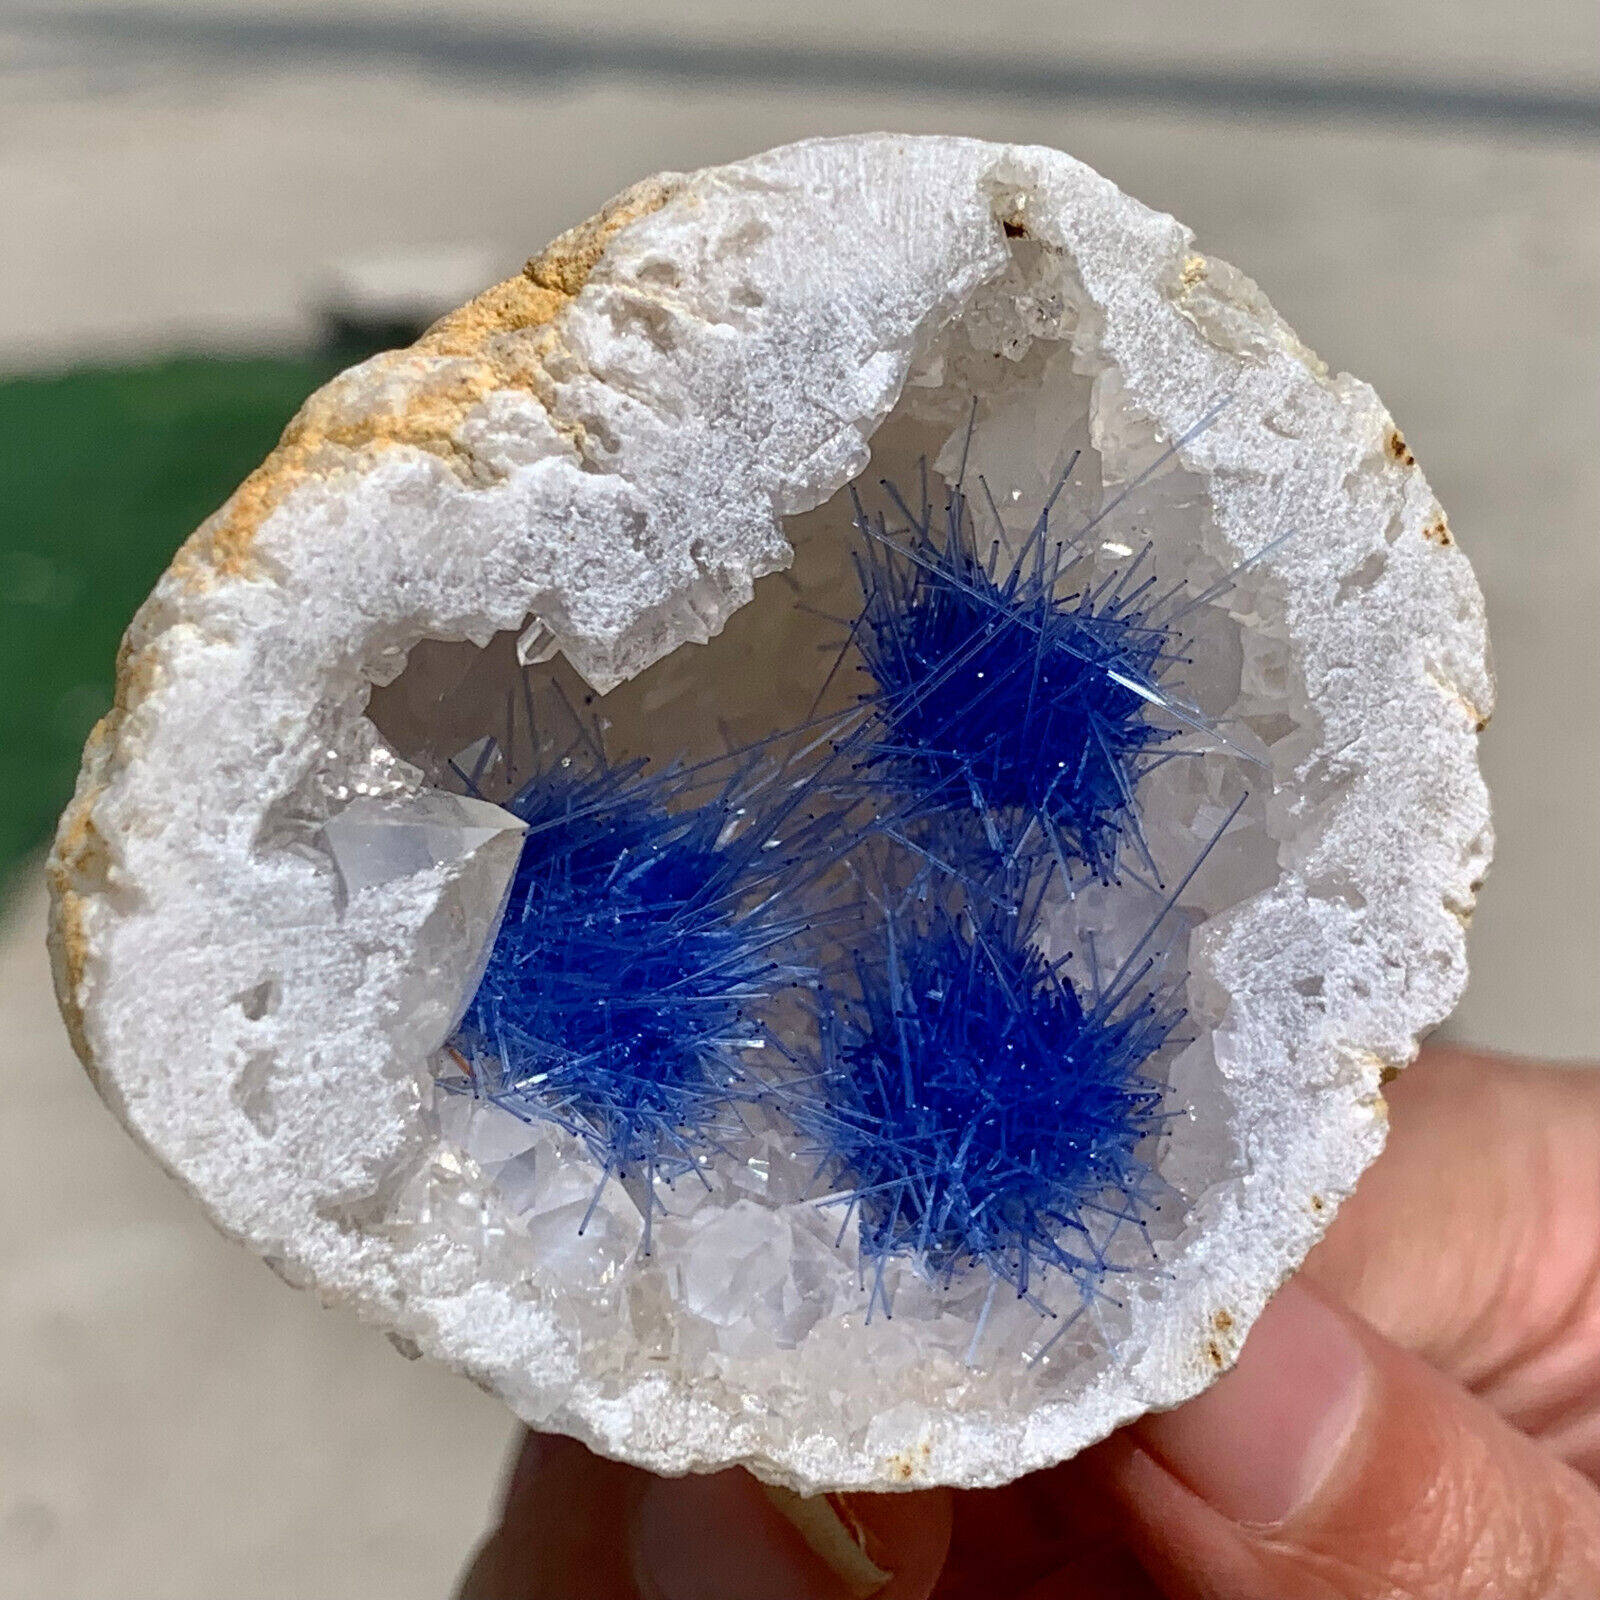 76G Rare Moroccan blue magnesite and quartz crystal coexisting specimen